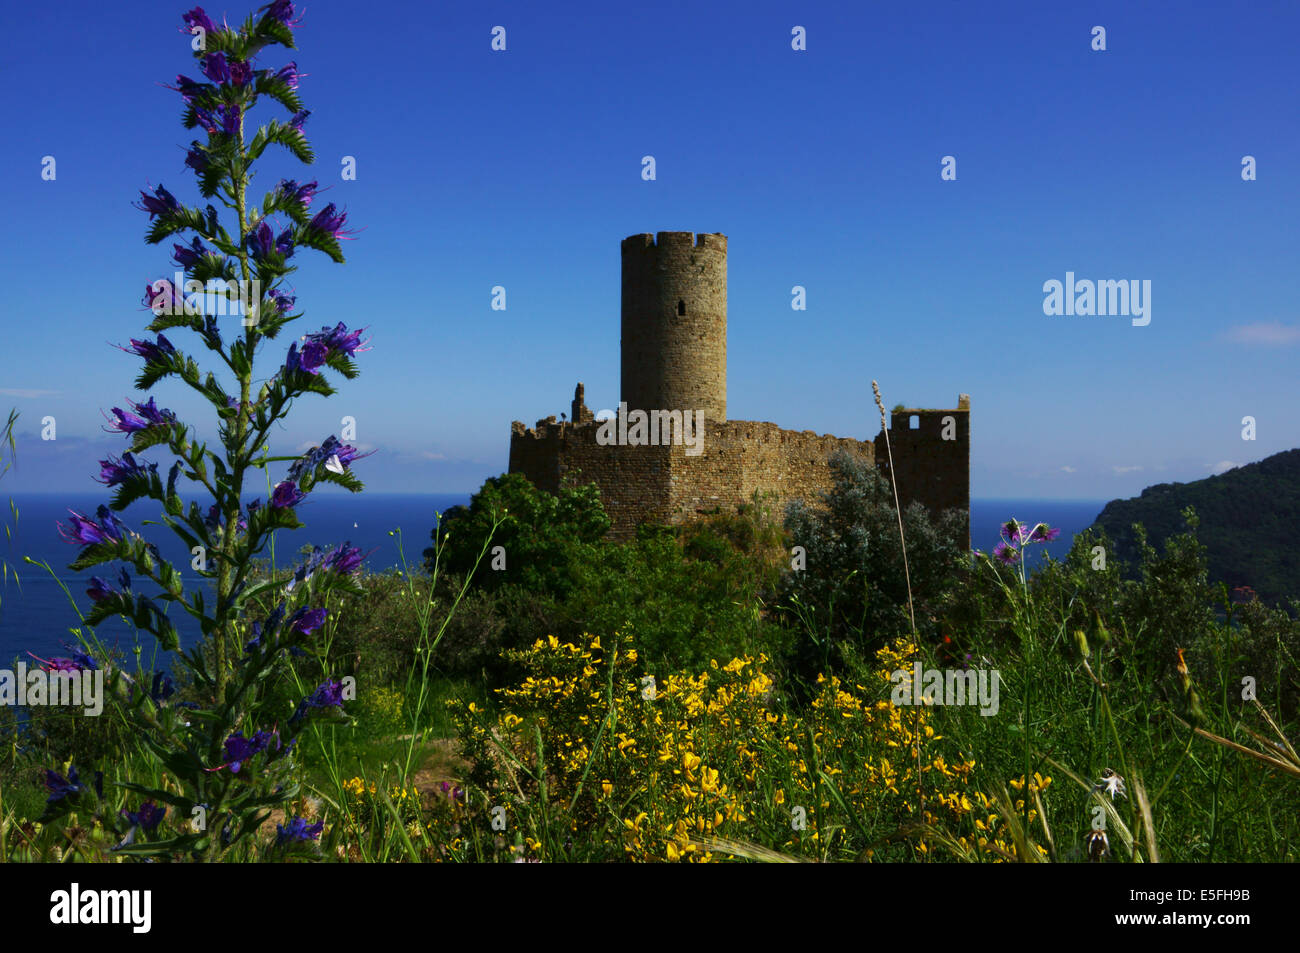 Castle ruin Noli, Riviera di Ponente, Liguria, Italy Stock Photo